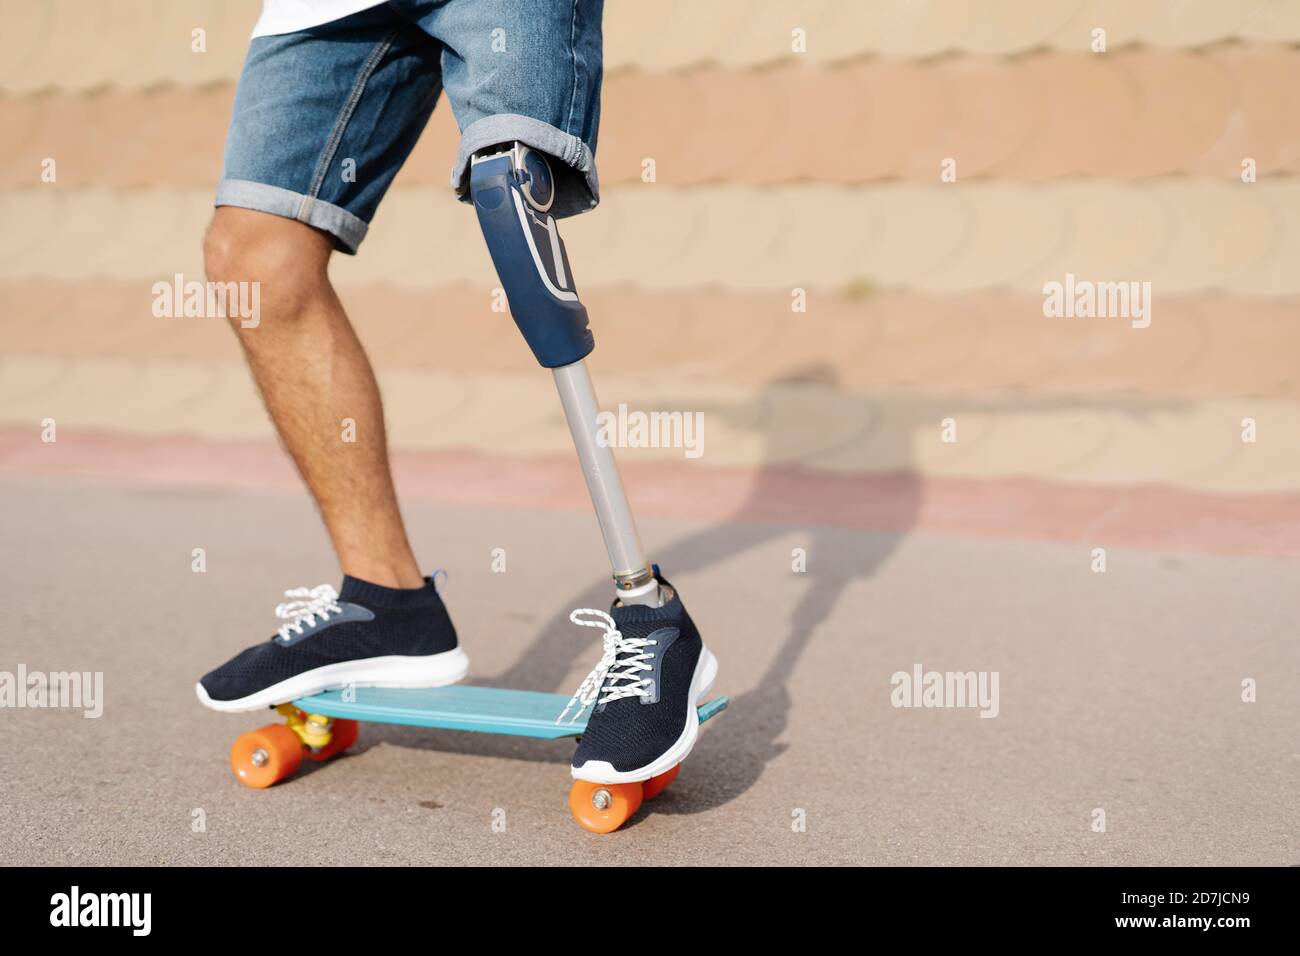 Athlète avec un membre et un pied artificiels debout sur un skateboard à cour Banque D'Images